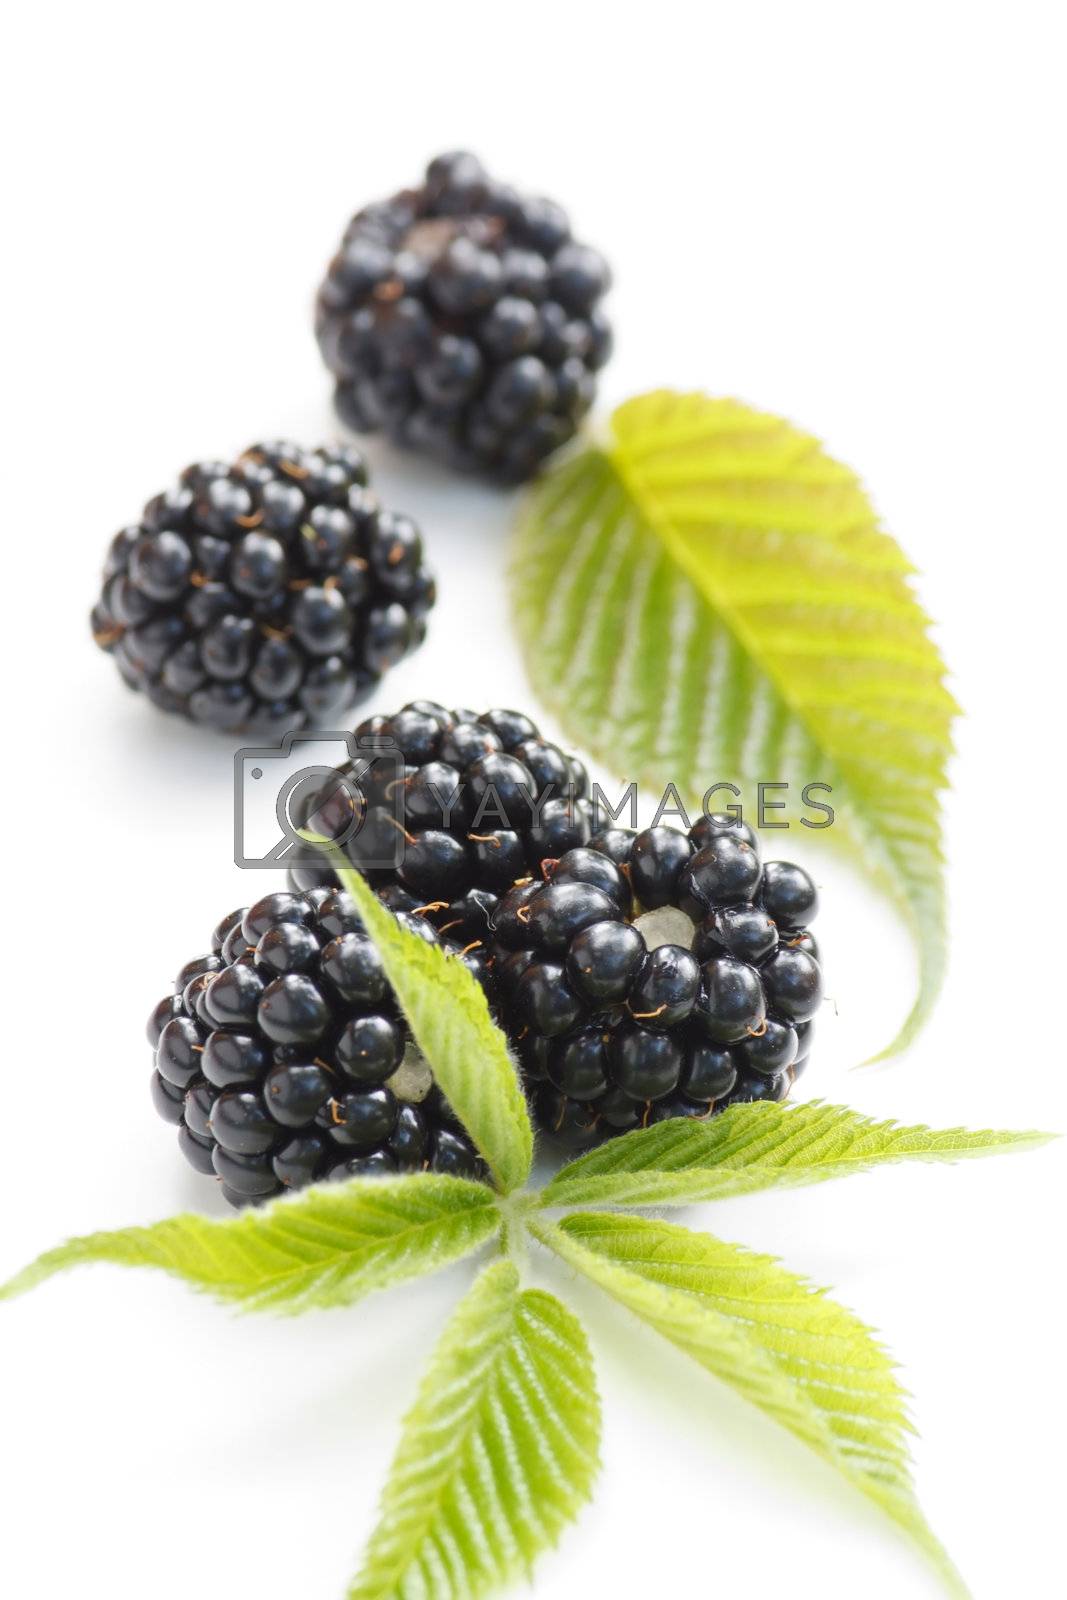 Royalty free image of dewberries (blackberries) and green leaves  by shebeko